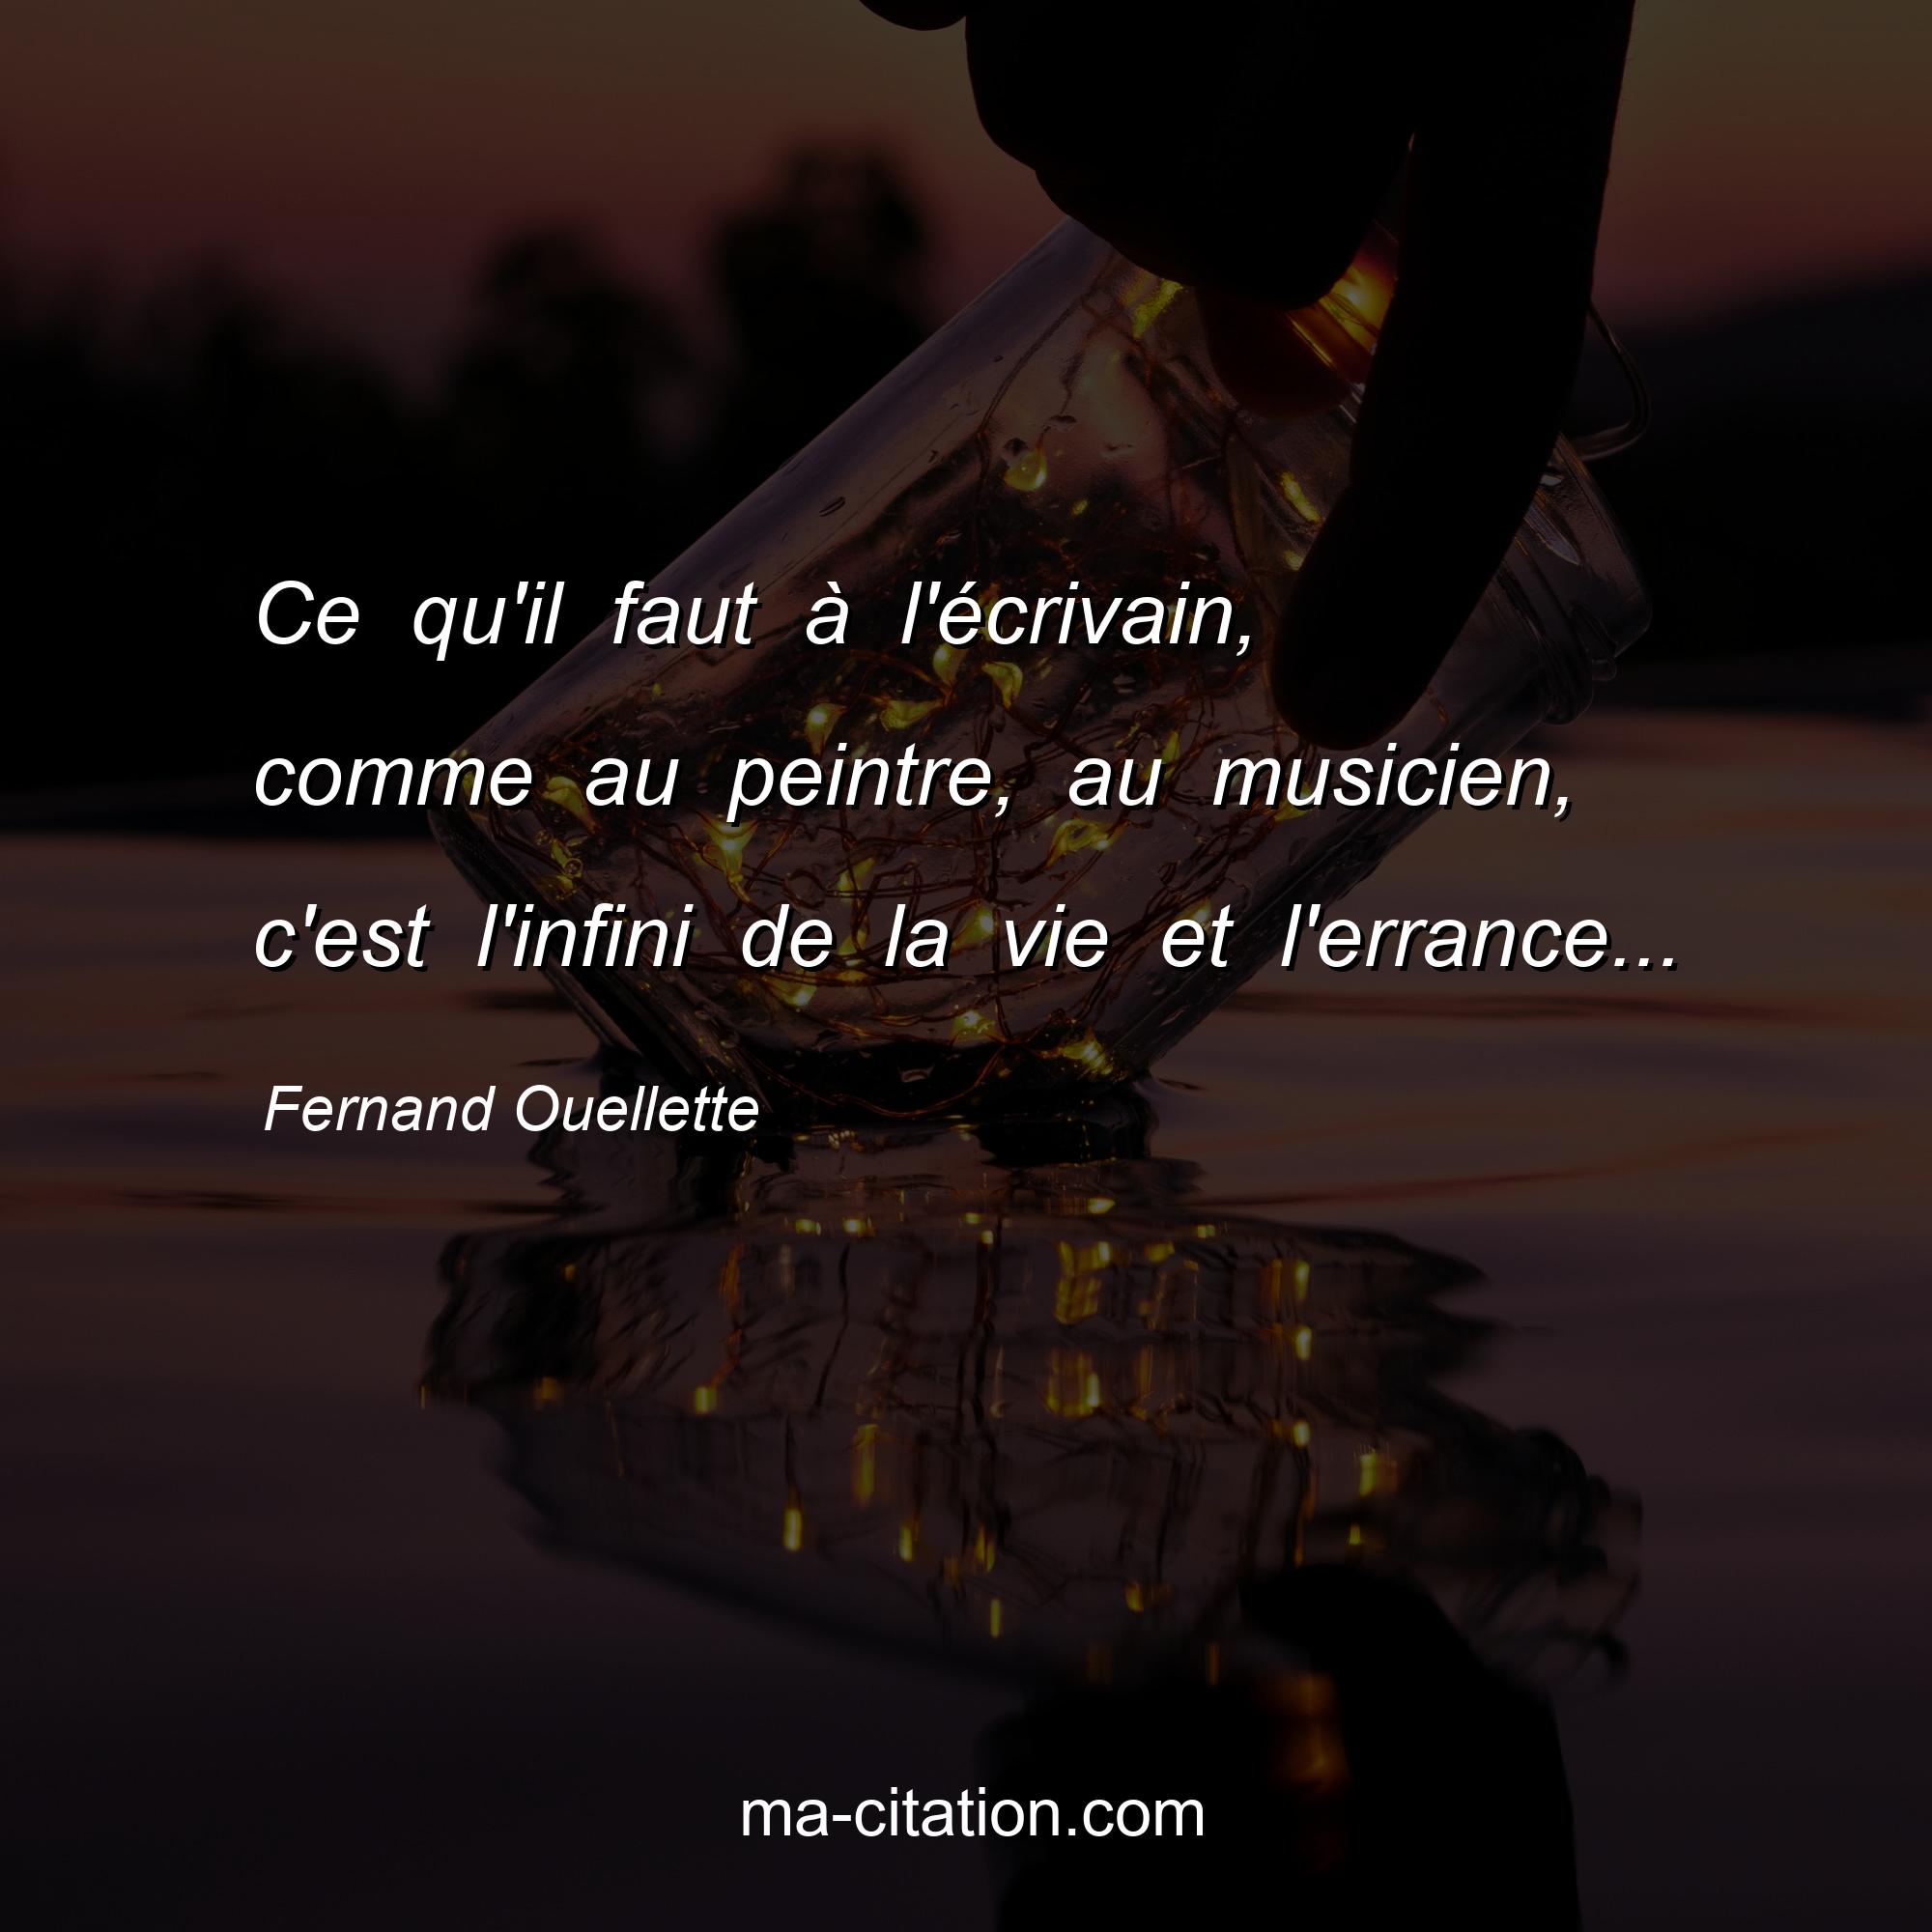 Fernand Ouellette : Ce qu'il faut à l'écrivain, comme au peintre, au musicien, c'est l'infini de la vie et l'errance...